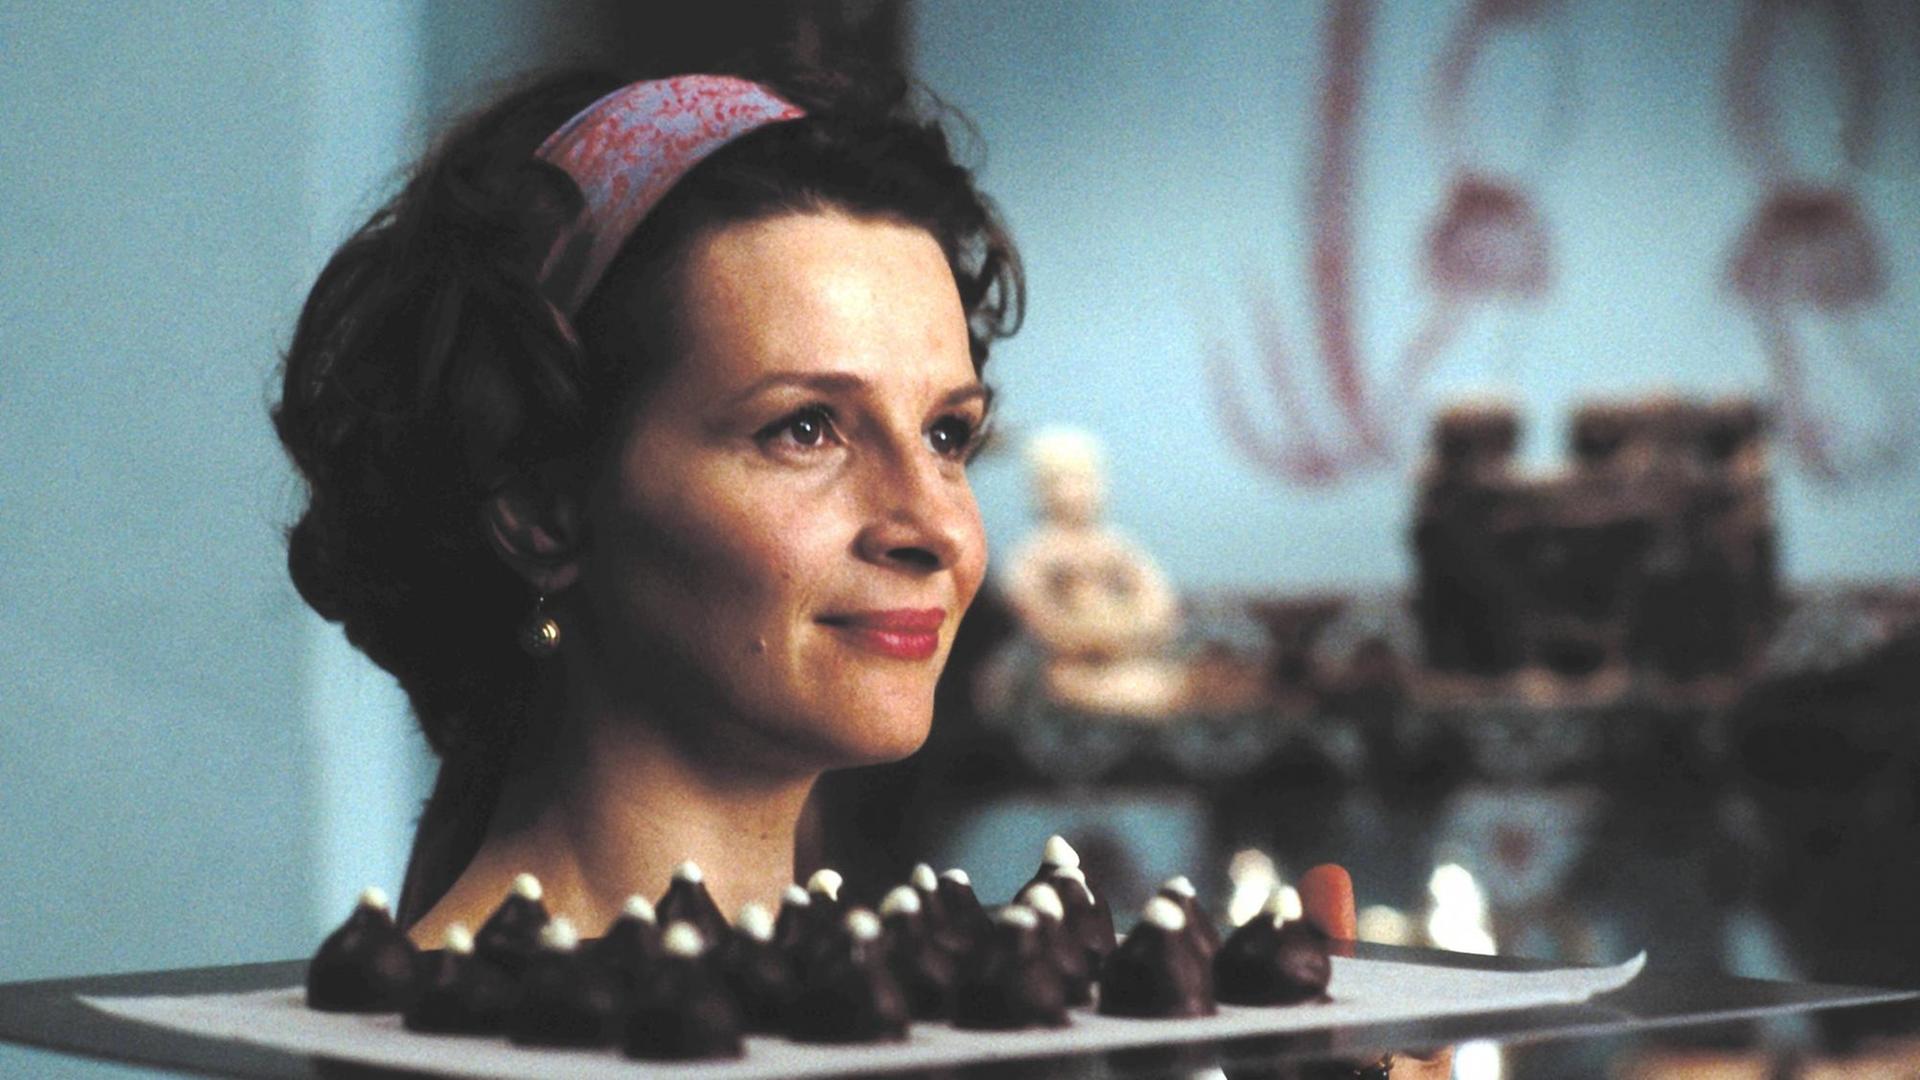 Filmszene aus "Chocolat" mit Juliette Binoche als Vianne, mit einem Tablett voller Pralinen